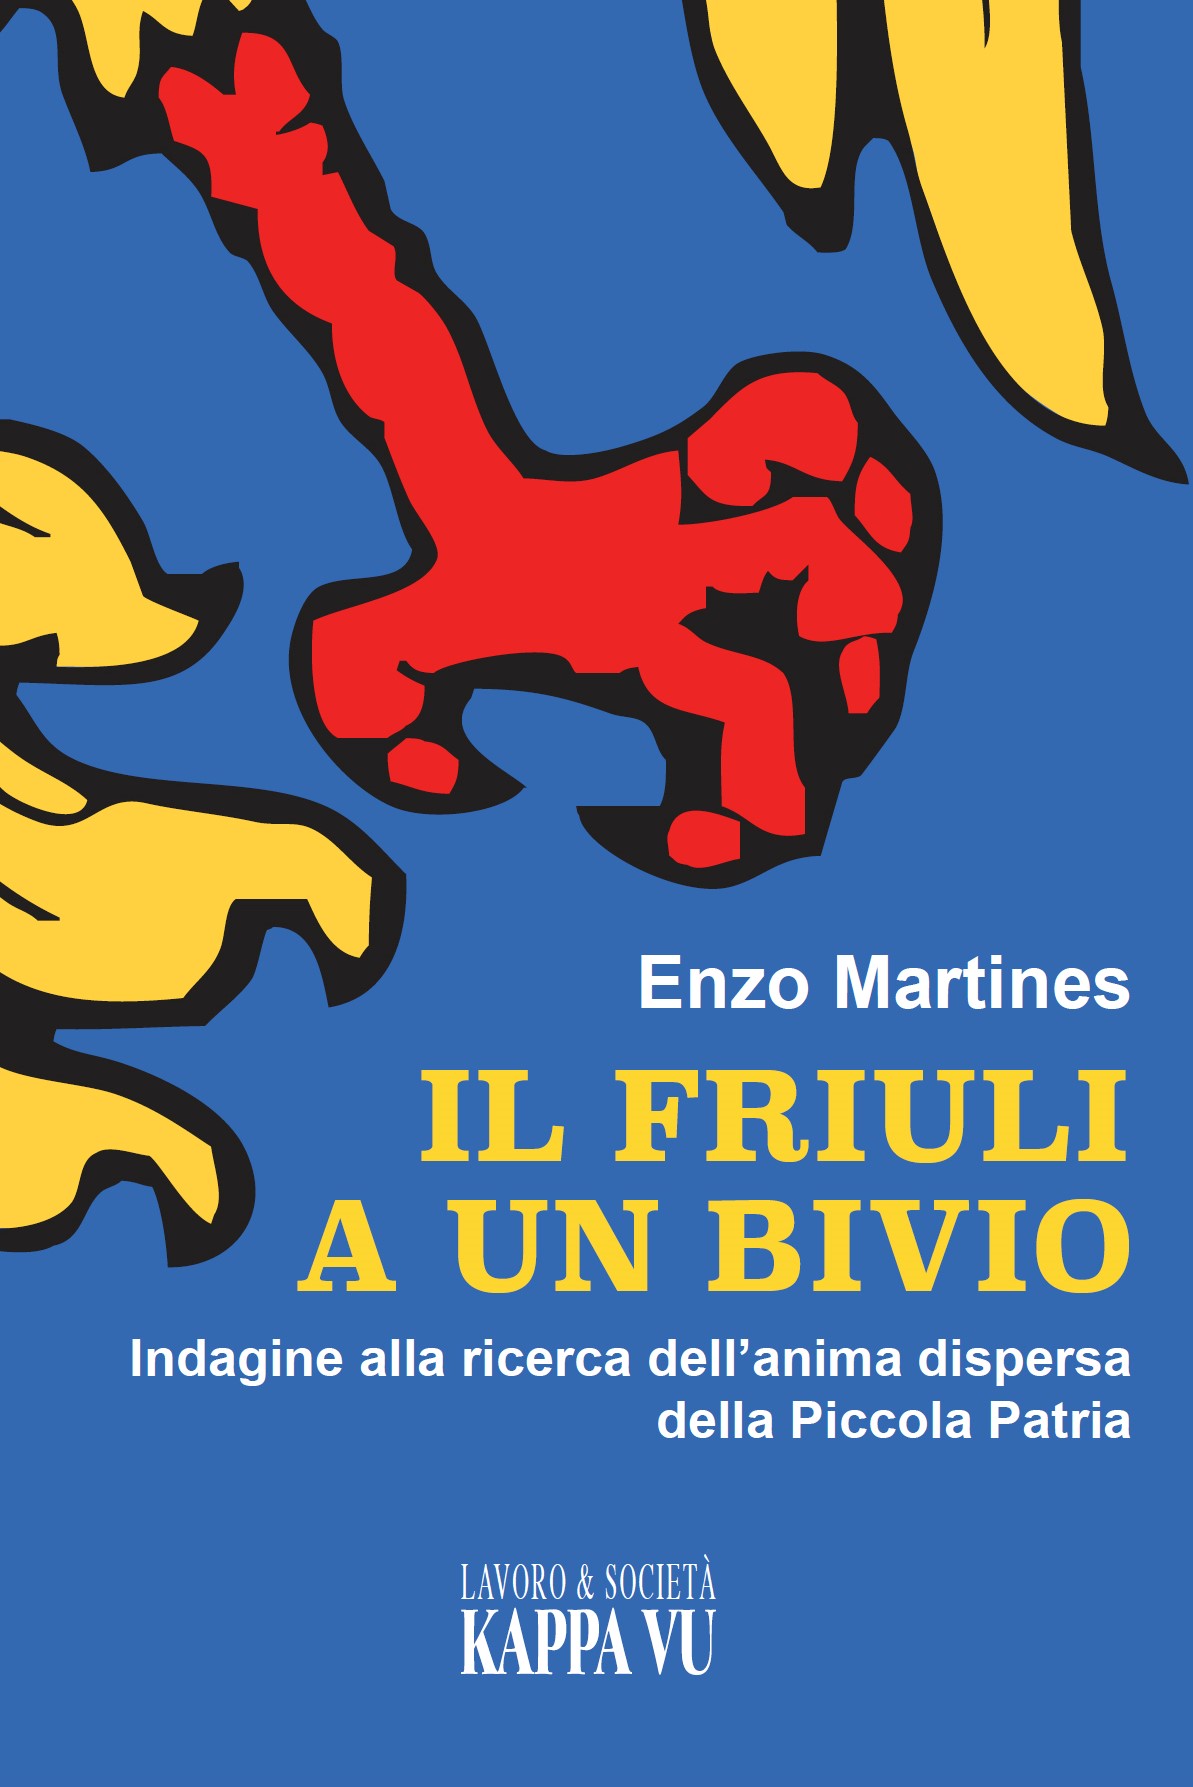 Presentazione Il Friuli a un bivio di Enzo Martines